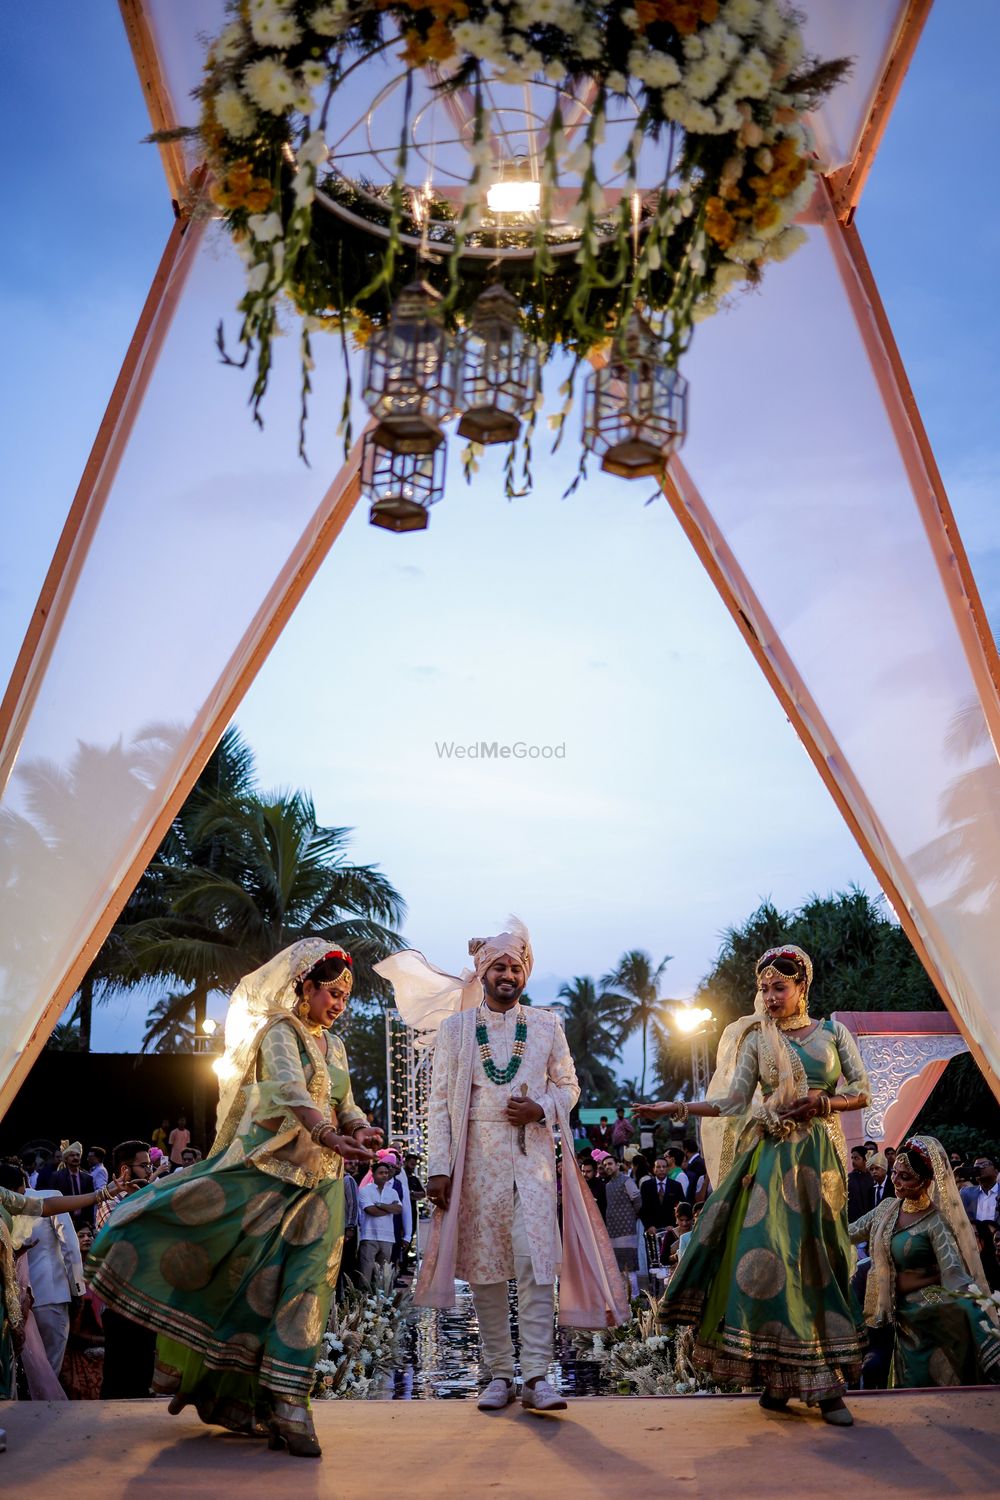 Photo From Siddharth + Surbhi WEDDING - By NN Wedding Clicks